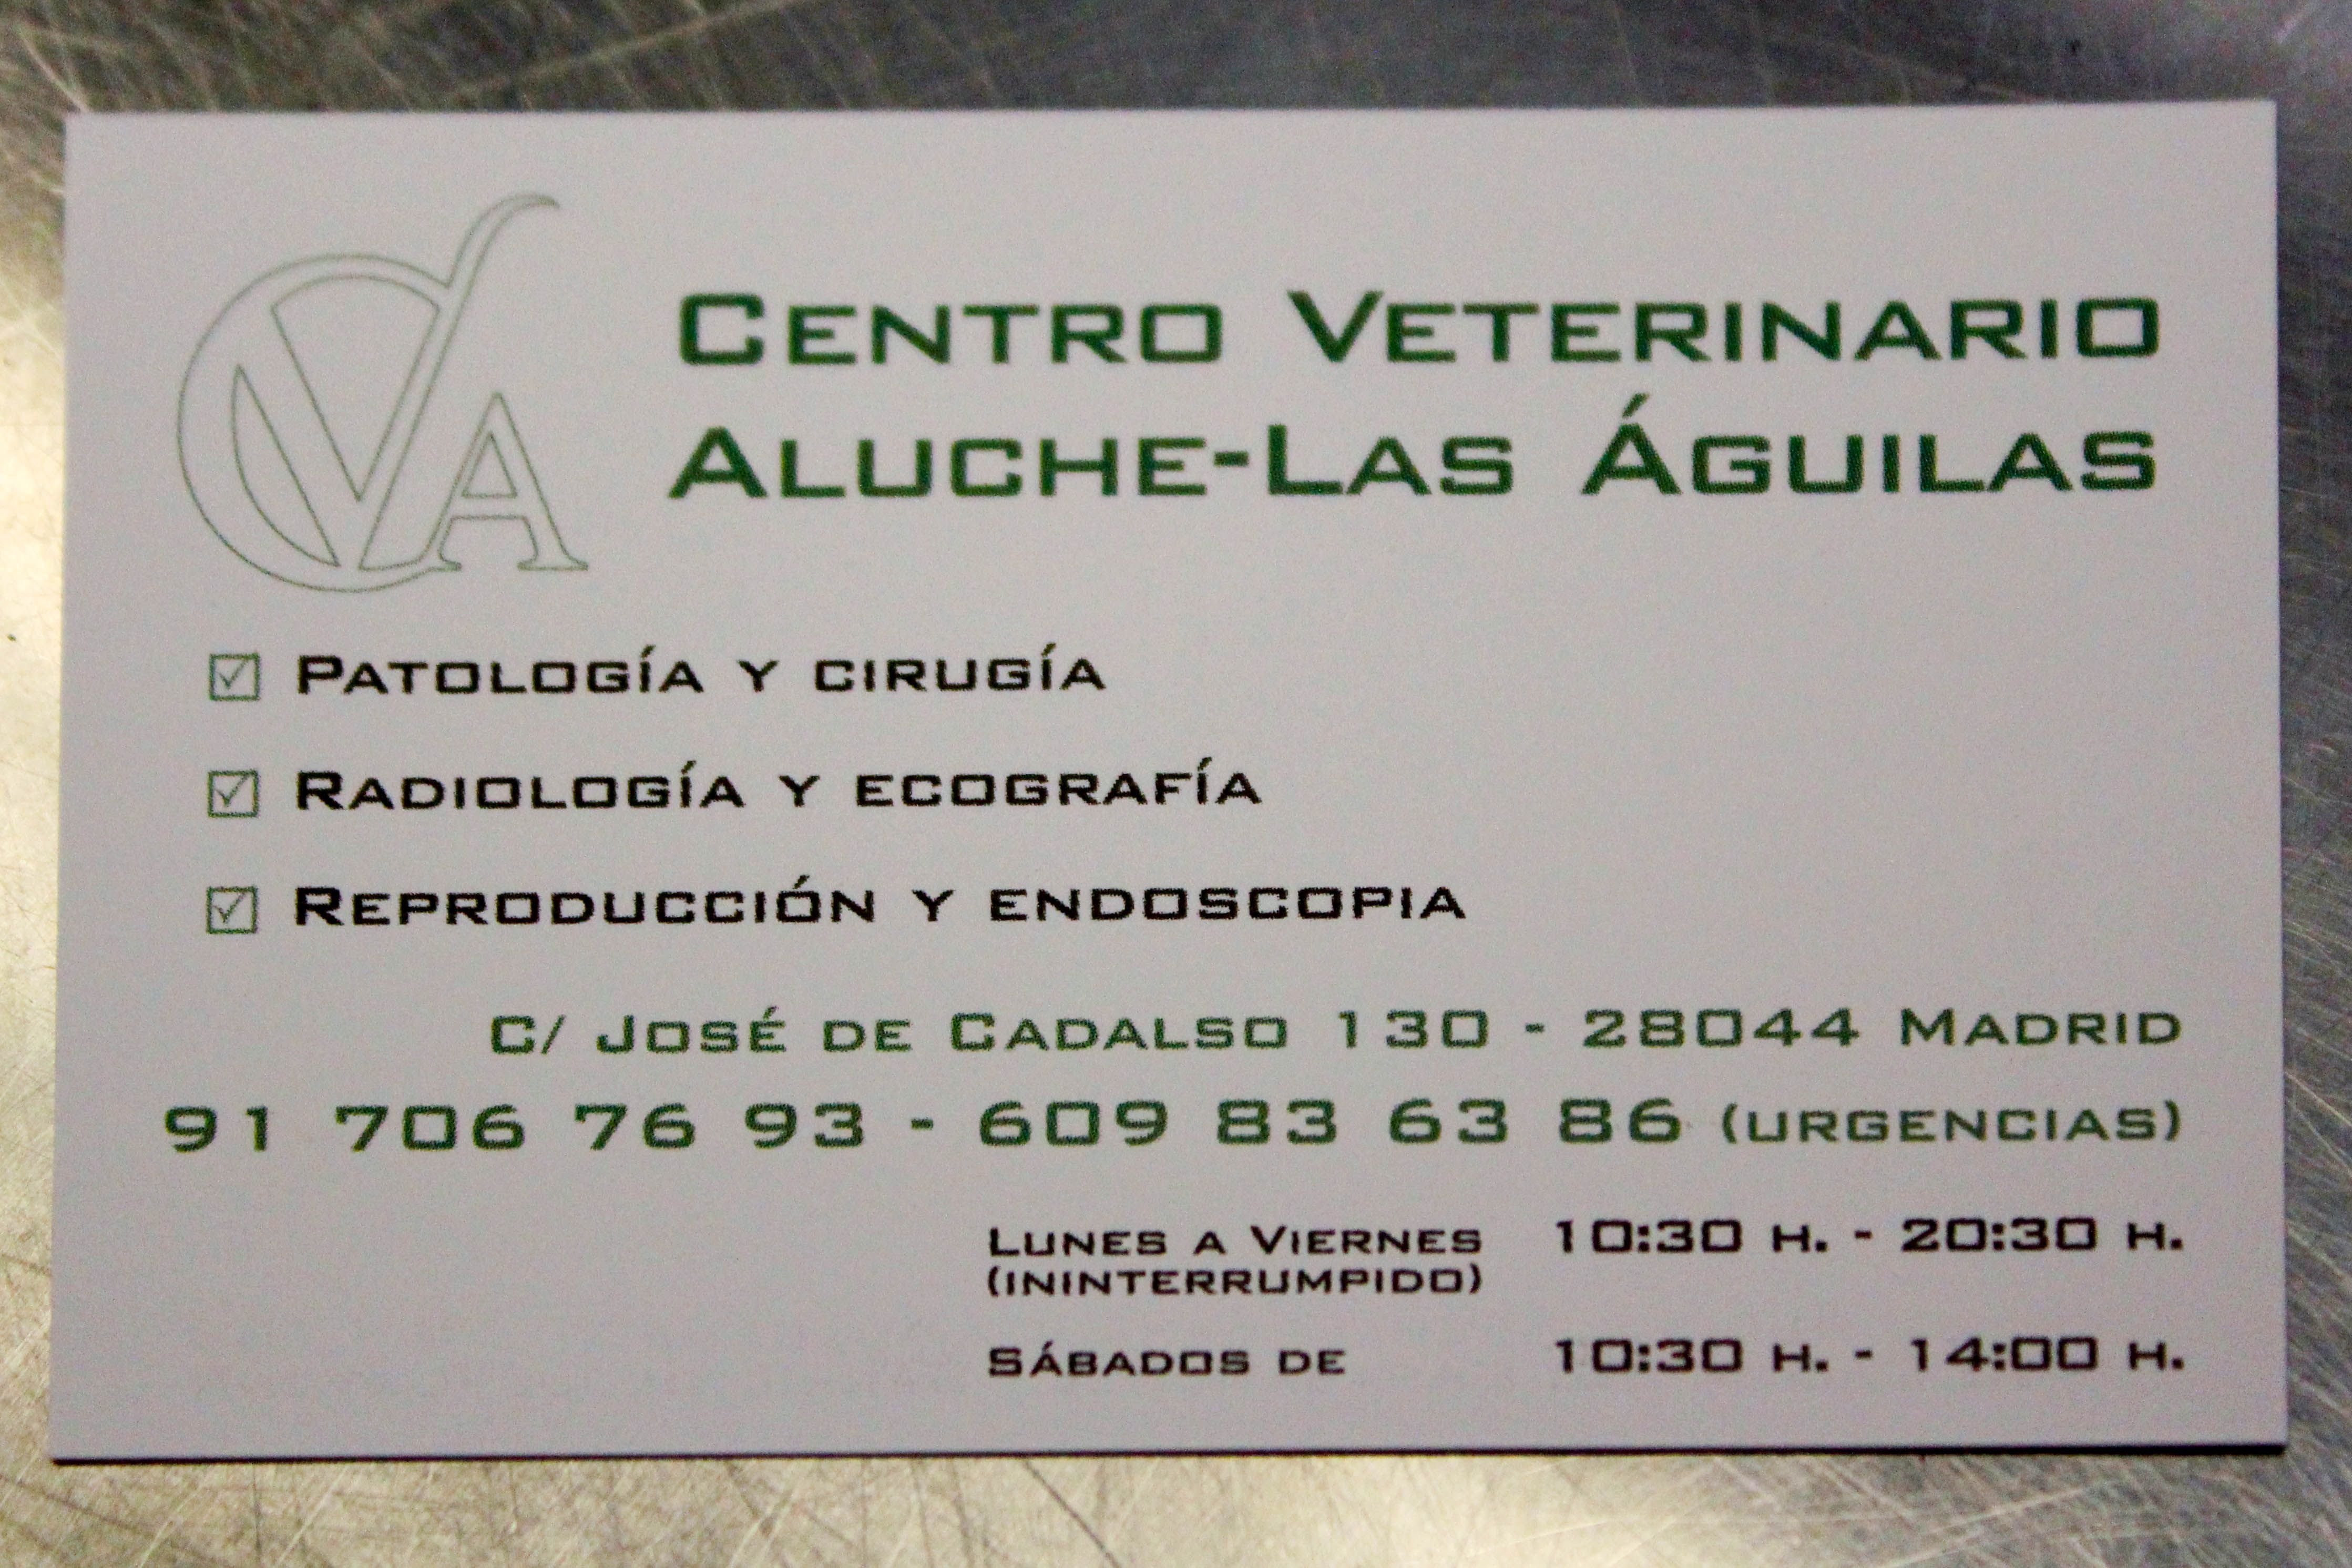 Foto 4 de Veterinarios en Madrid | Centro Veterinario Aluche Las Águilas